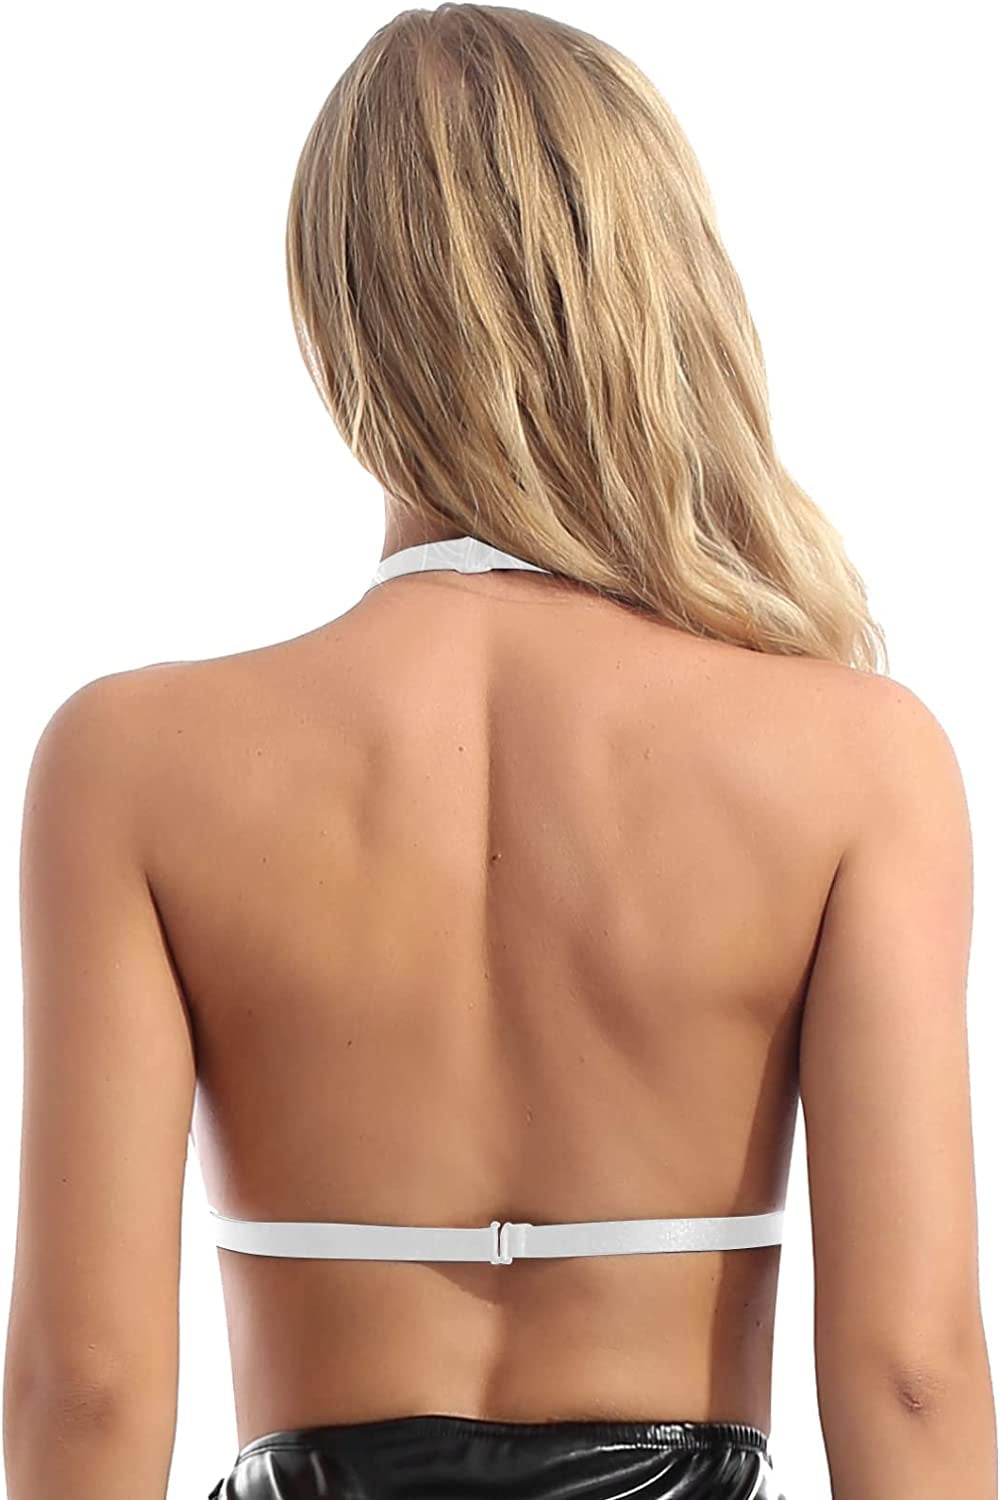 Moily Women's Sheer Mesh Floral Lace Nipple Split Wire-Free Unlined Bikini  Bra Triangle Bralette 